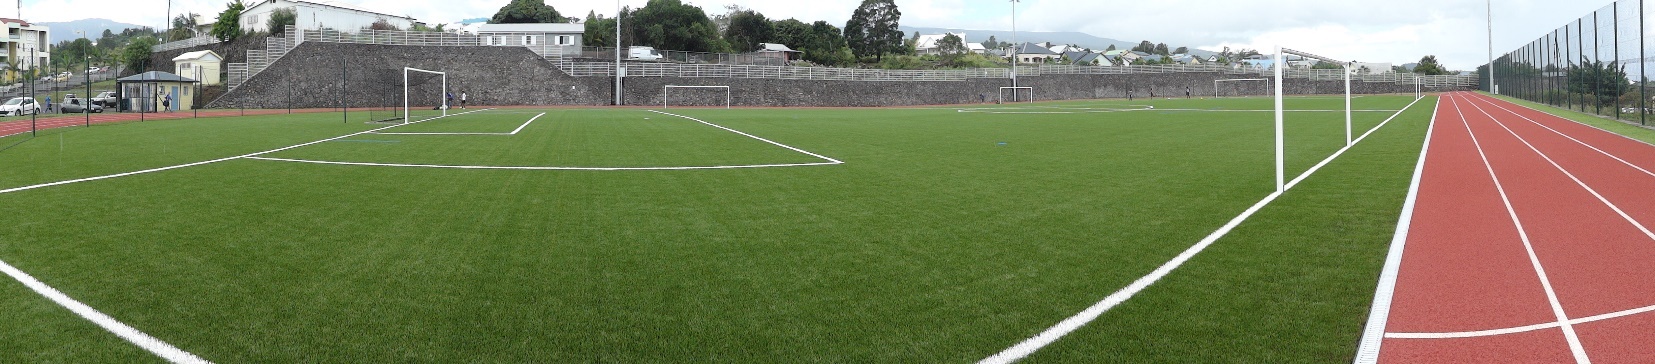 Terrain synthétique et piste – Stade P.BADRE Tampon / La Réunion